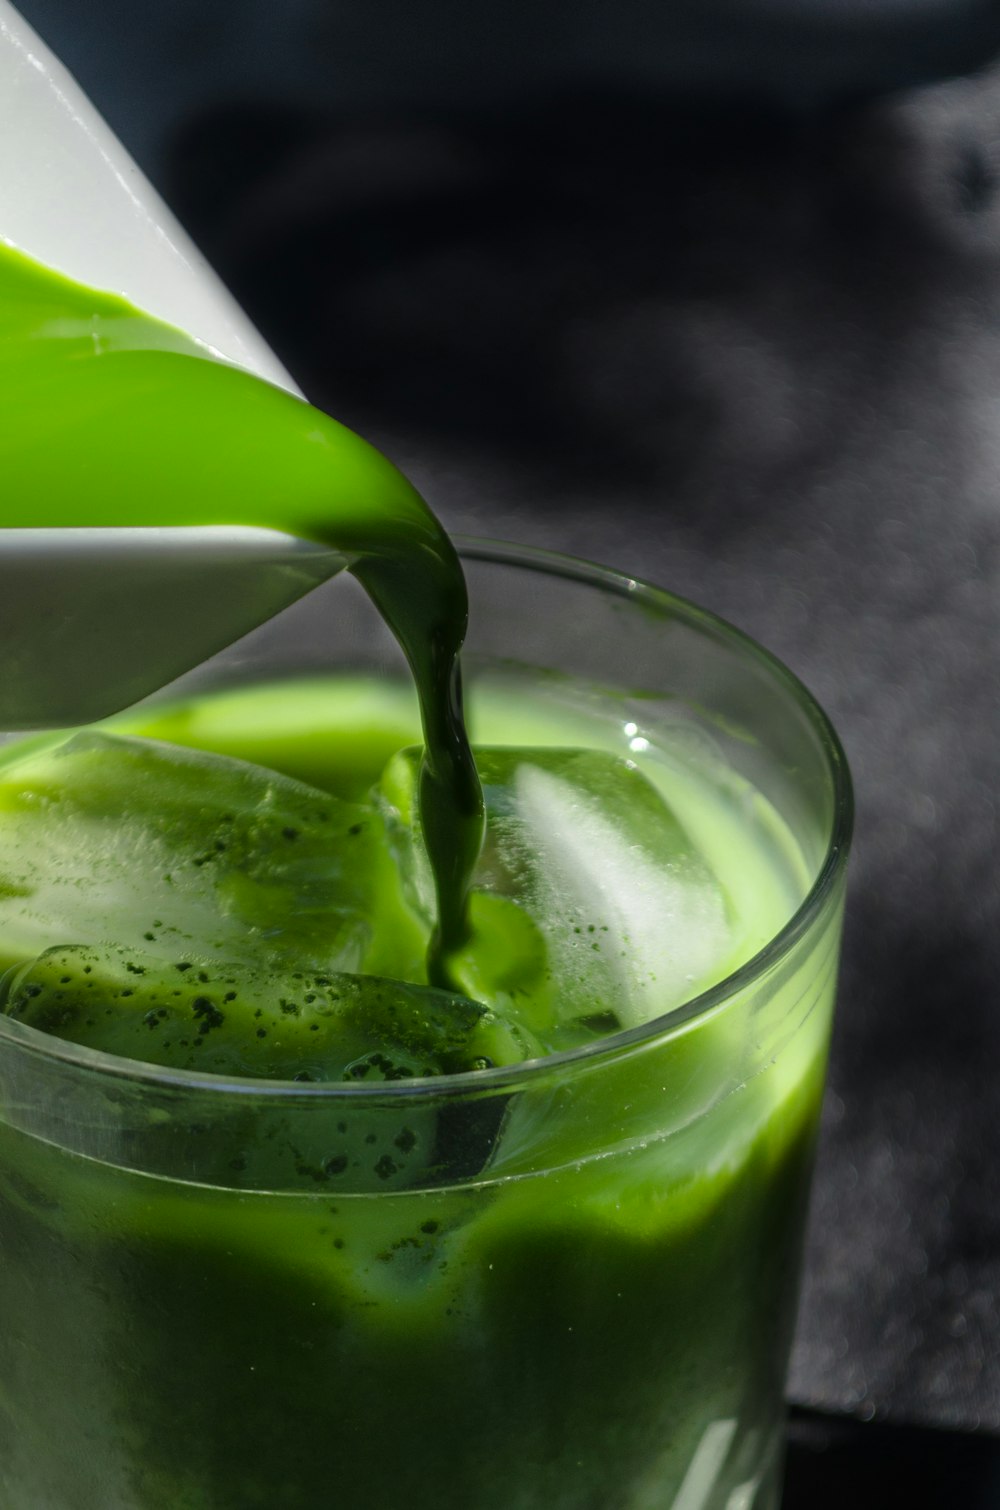 una brocca che versa liquido verde in un bicchiere